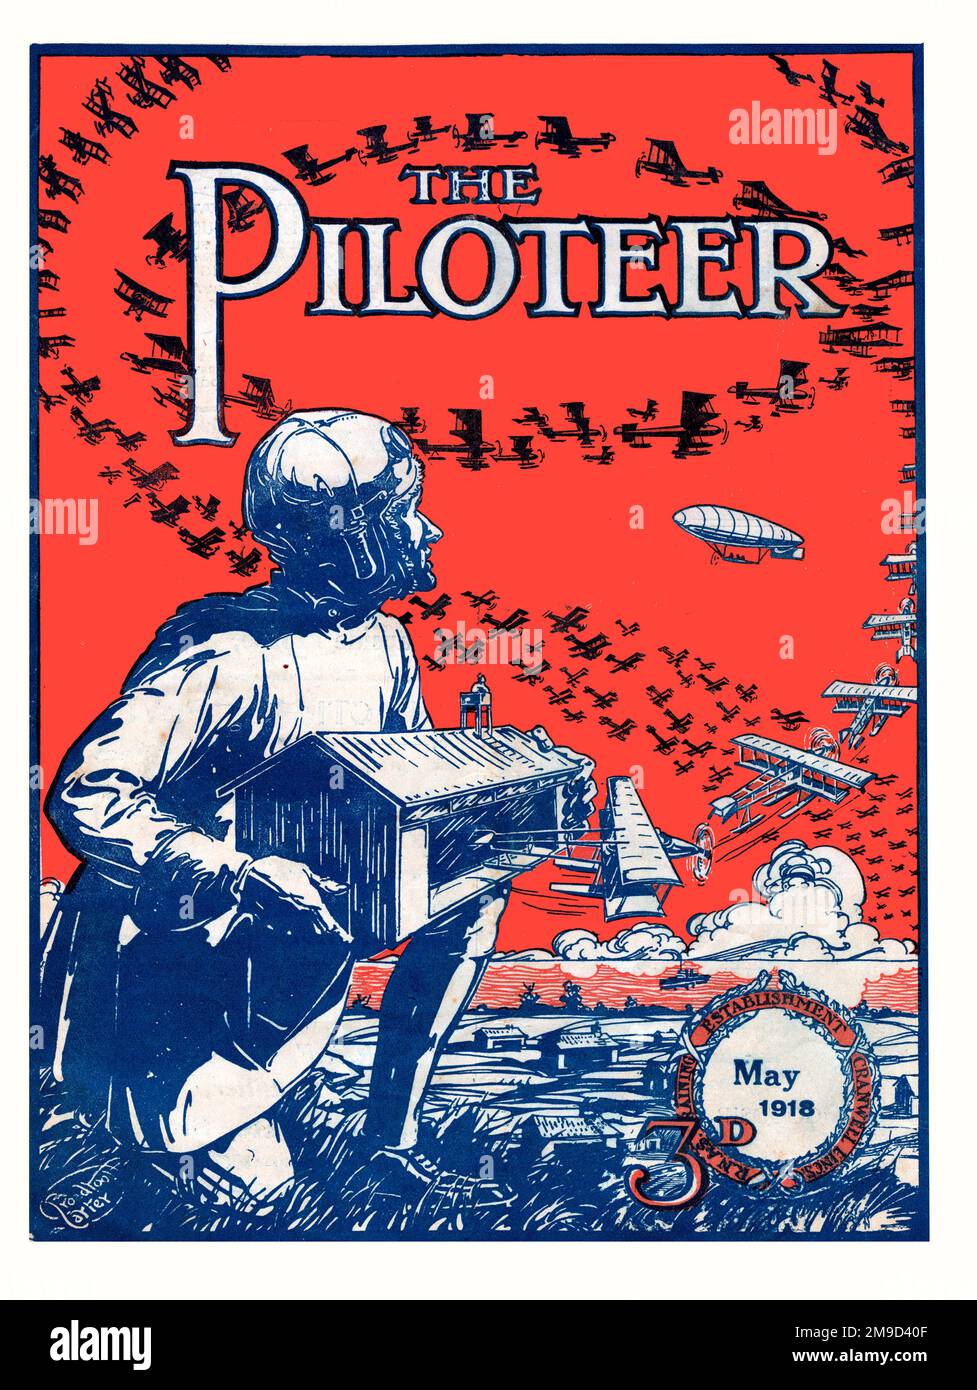 Couverture du Piloteer mai 1918. Banque D'Images